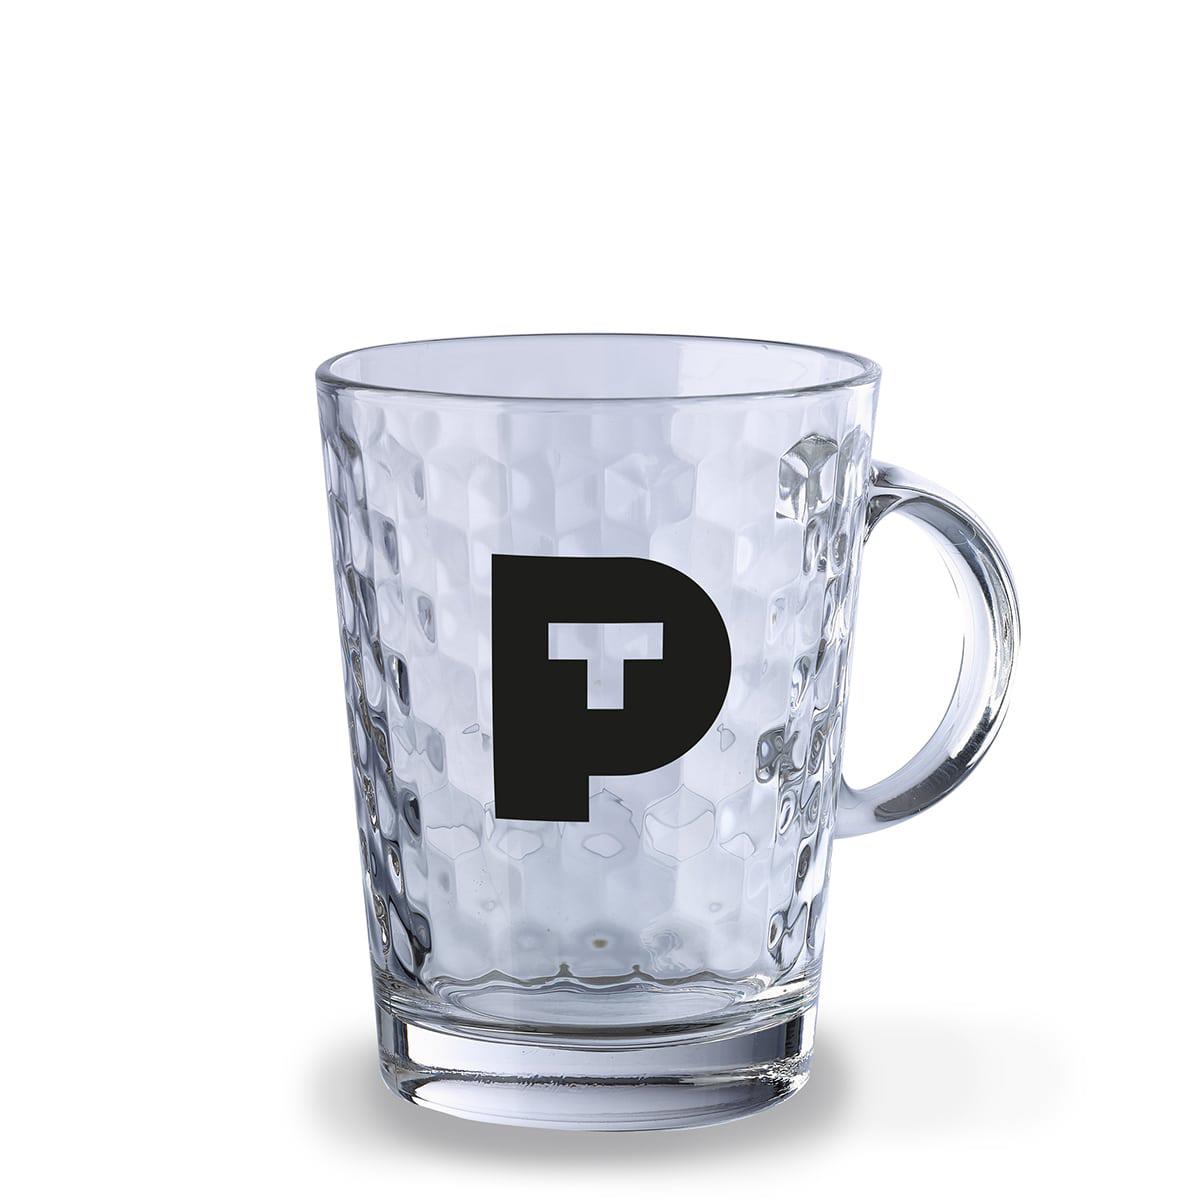 Pure Tea - Teeglas 0,4 Liter